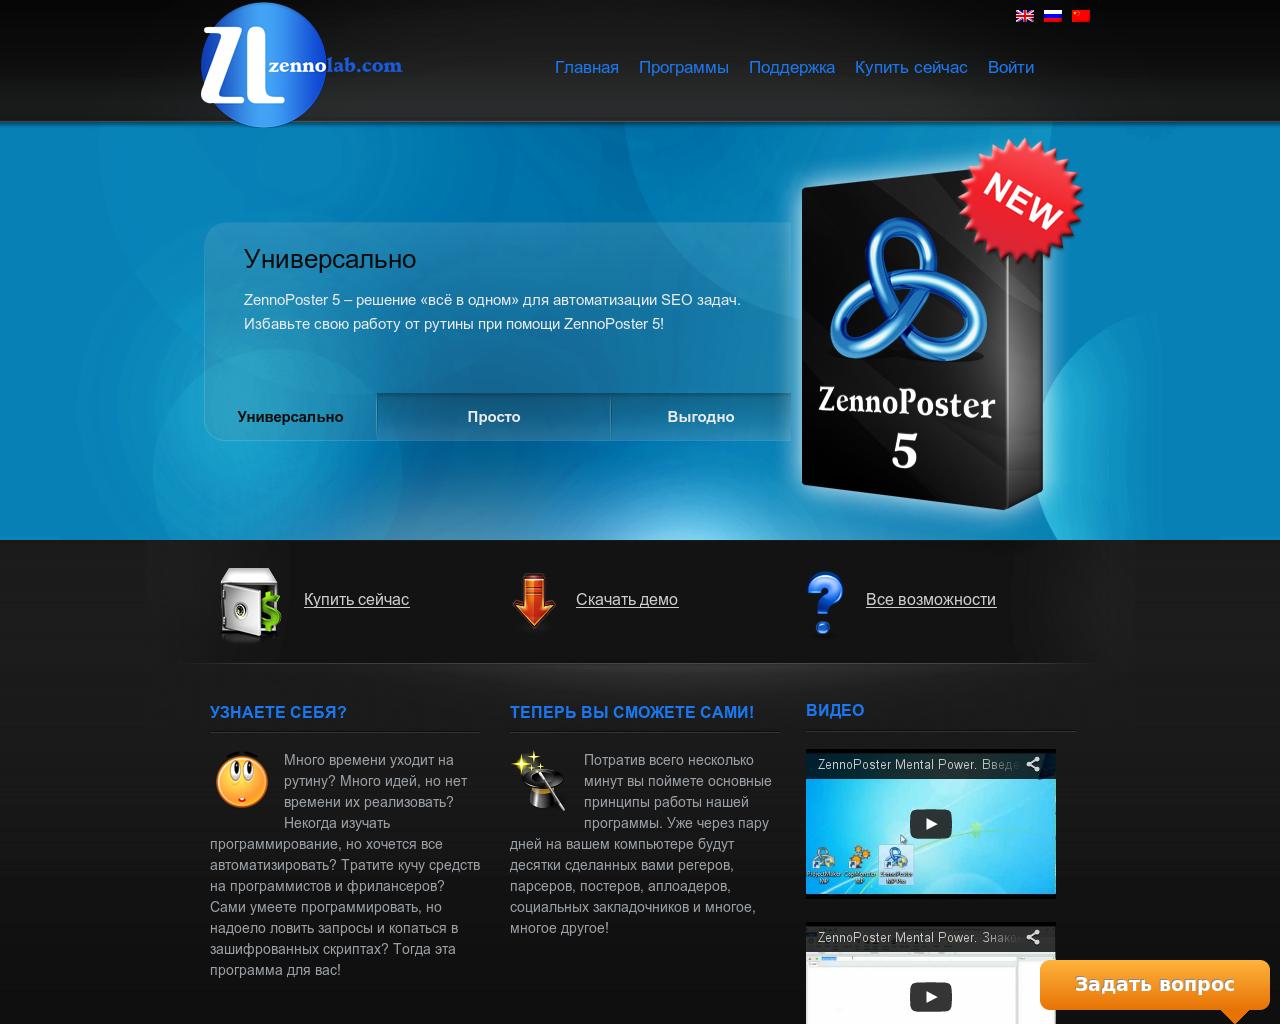 ZennoPoster 5 - Автоматизируйте любые задачи в интернете - Сервисы и программы | MMGP